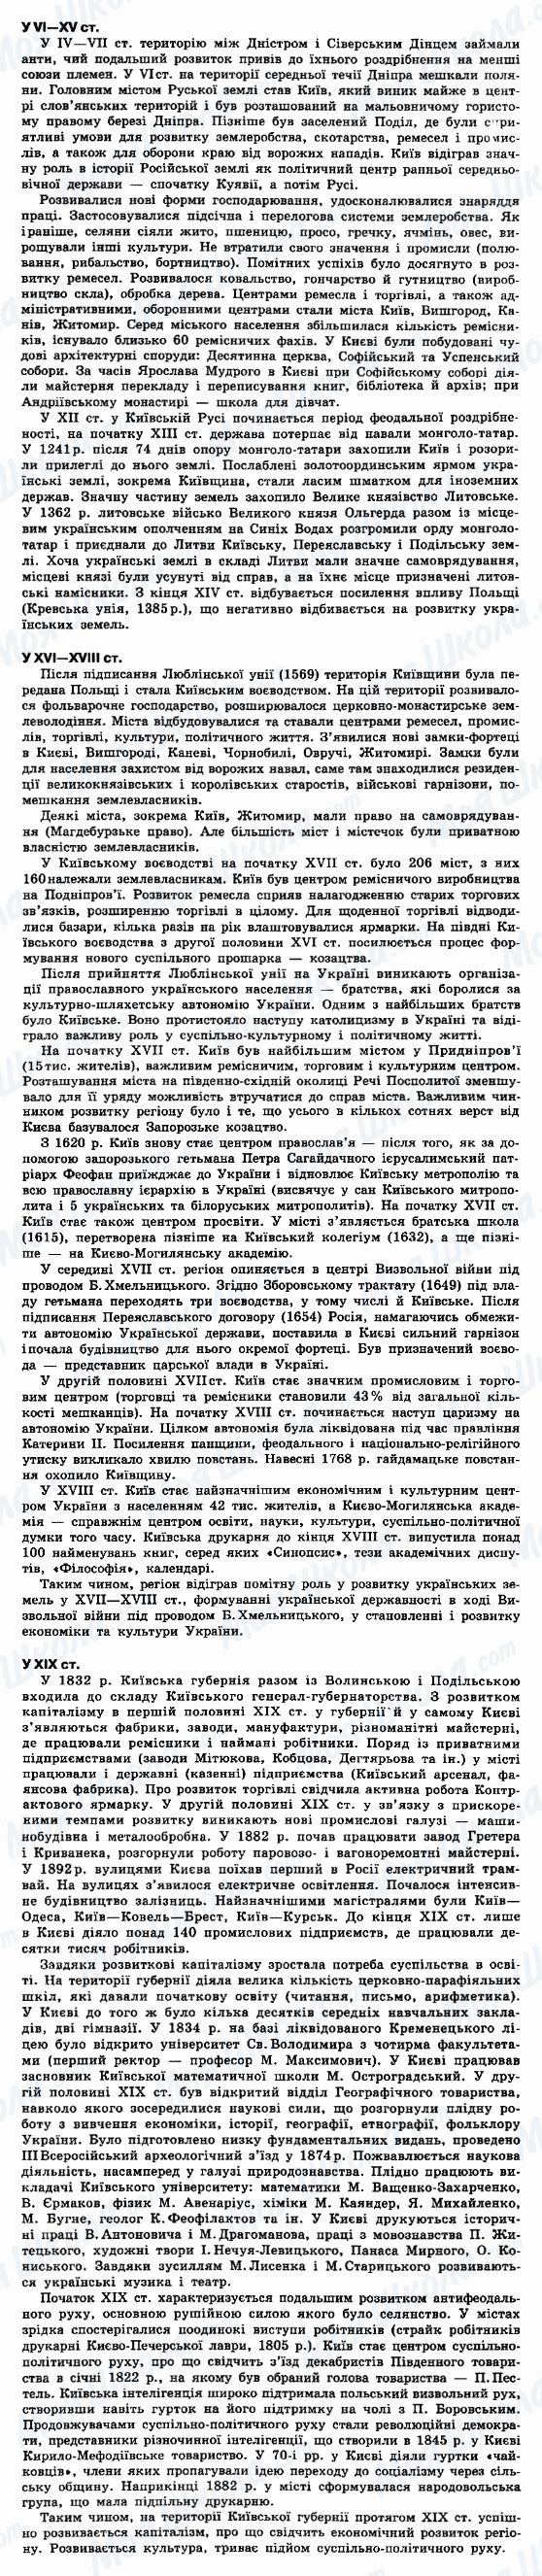 ДПА Історія України 9 клас сторінка 1